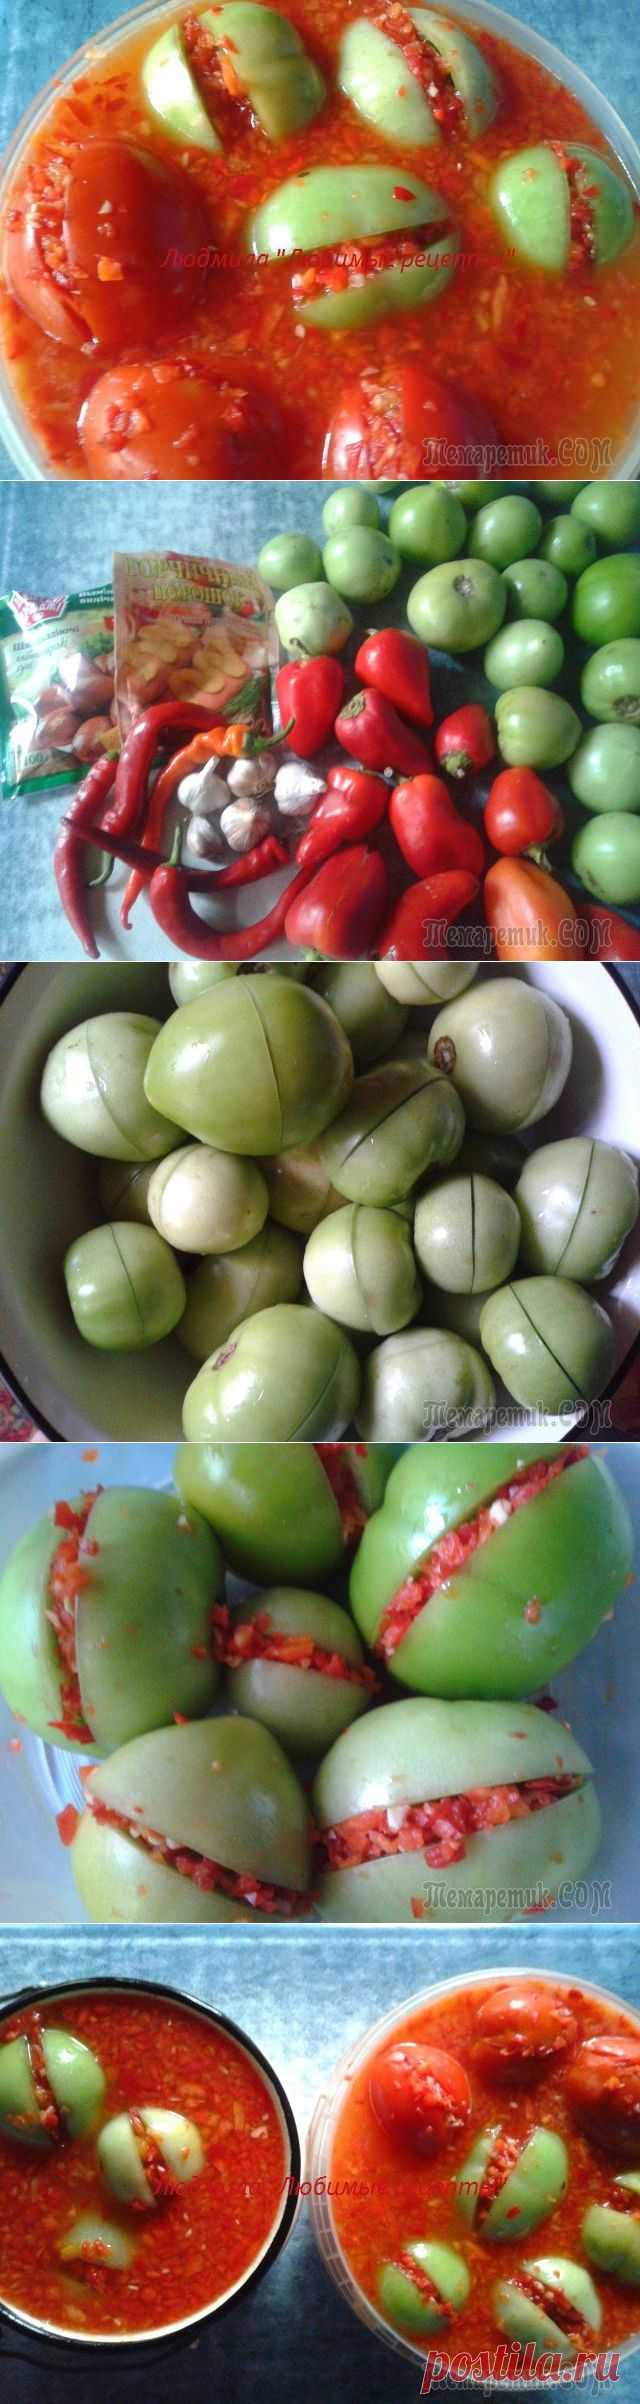 Зелёные квашеные помидоры с острой начинкой на дрожжевой закваске.